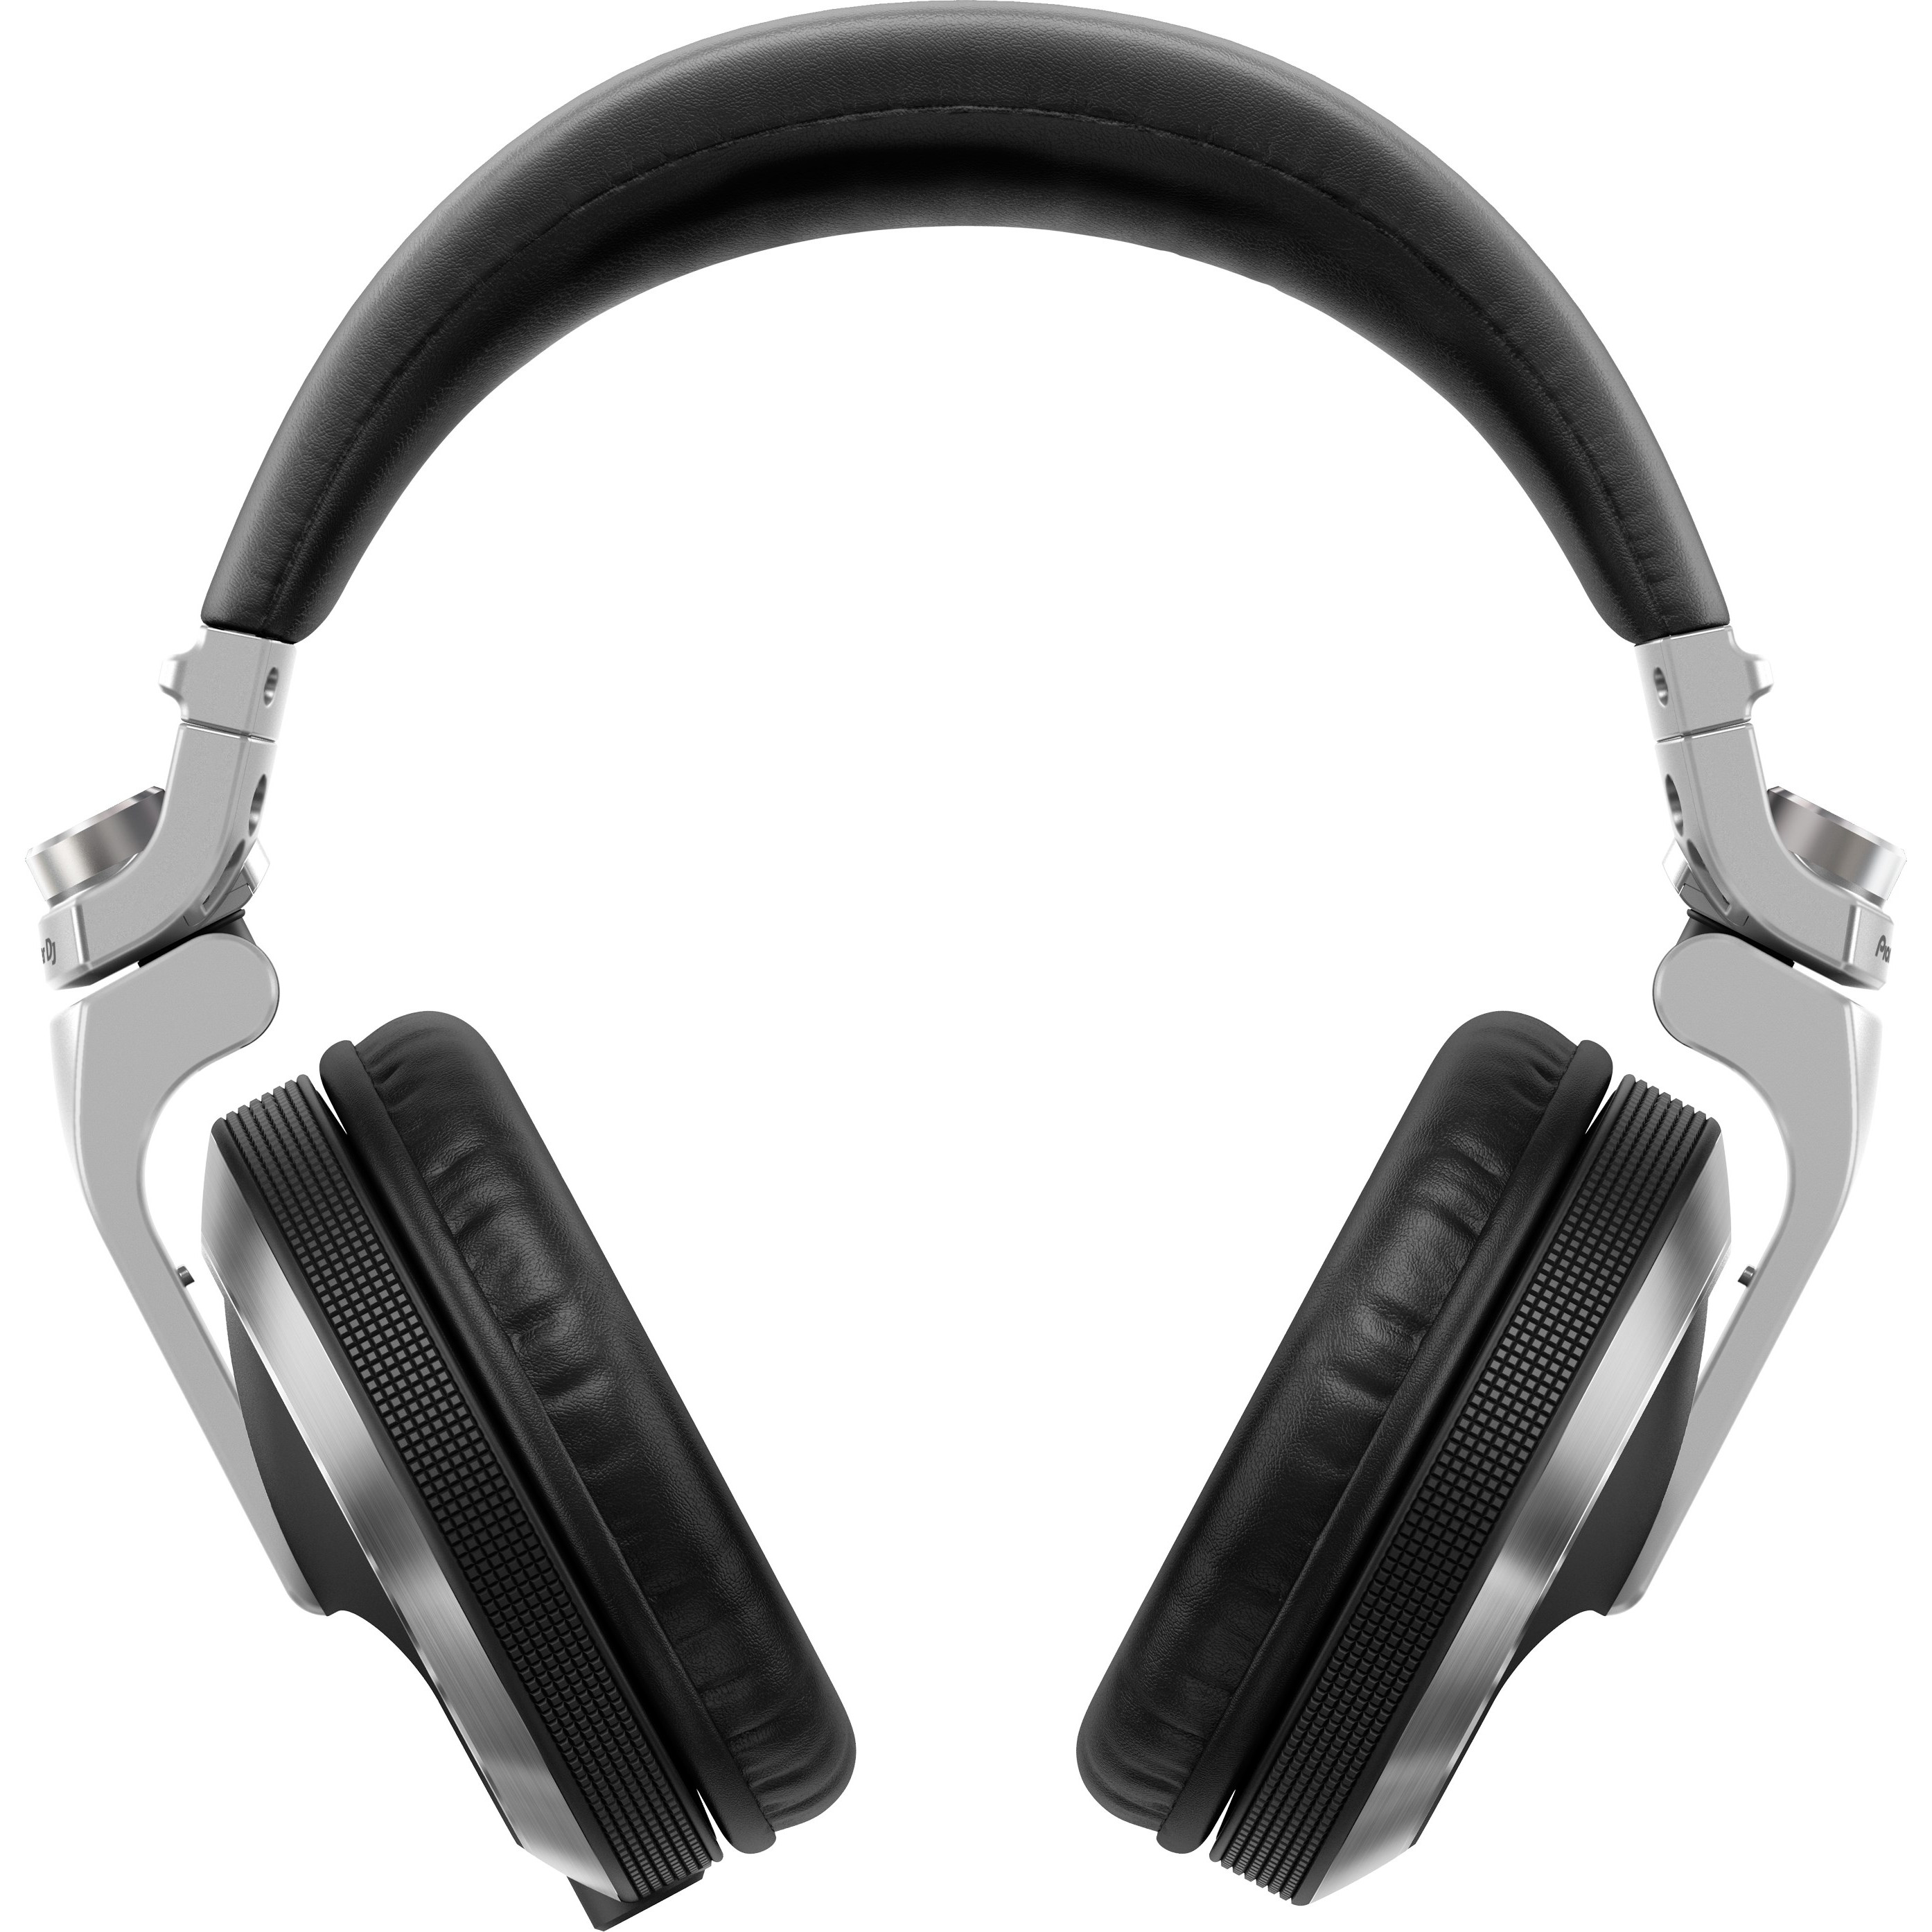 Tai nghe (Headphones) HDJ-X7-S (Pioneer DJ) - Hàng Chính Hãng